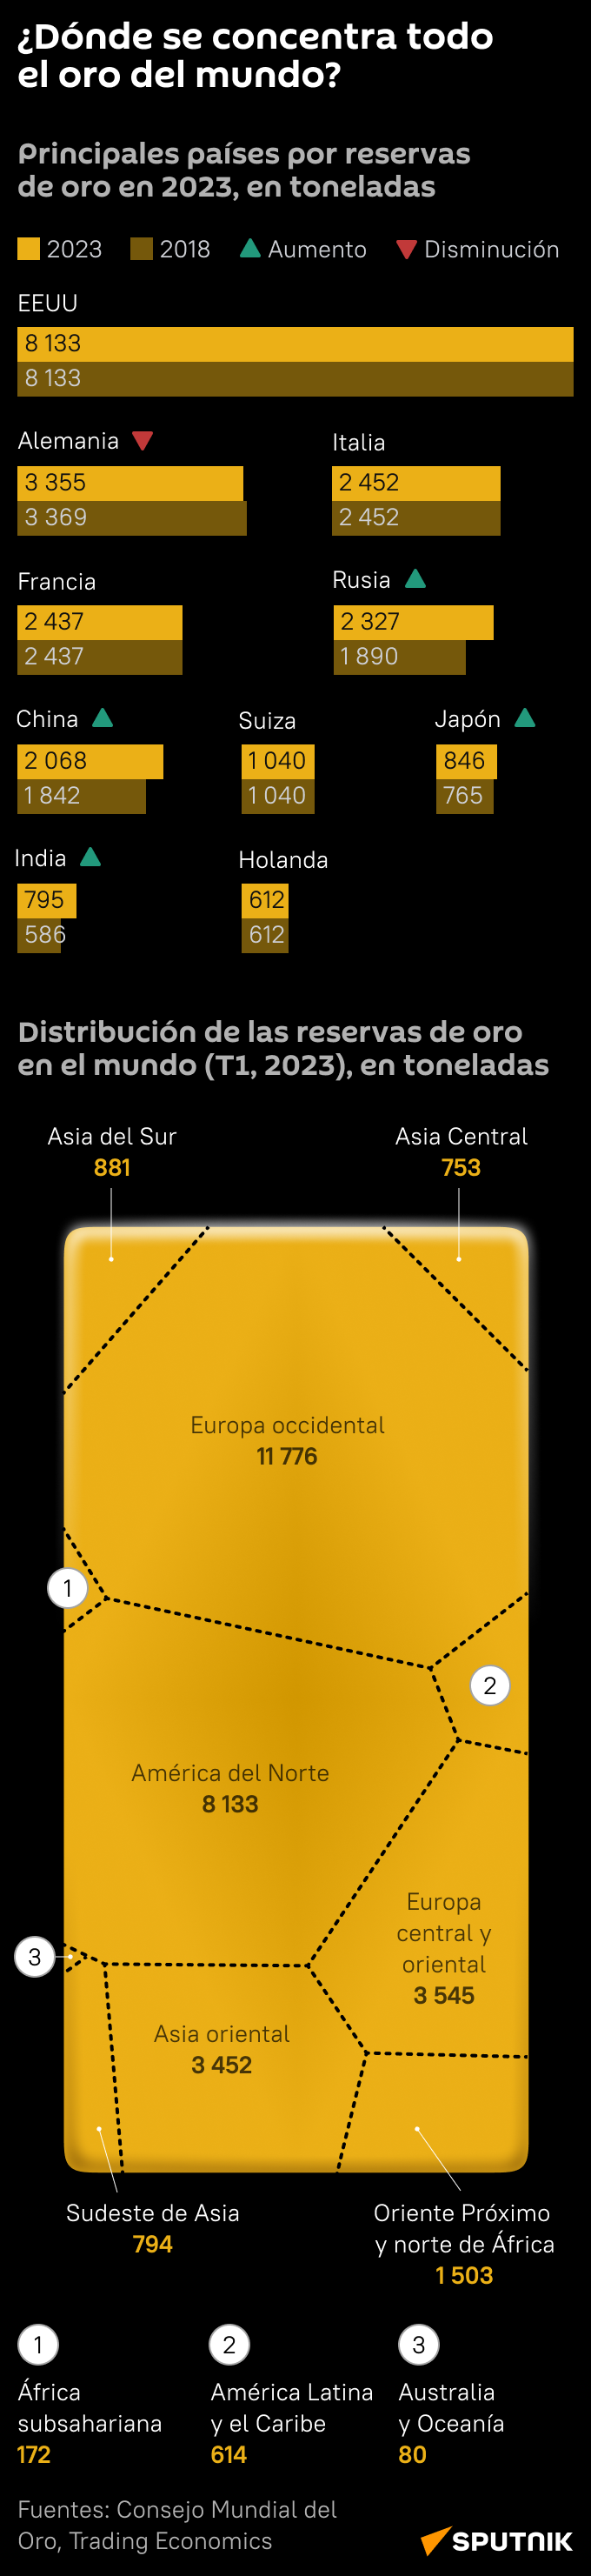 Distribución de reservas de oro en el mundo (mob) - Sputnik Mundo